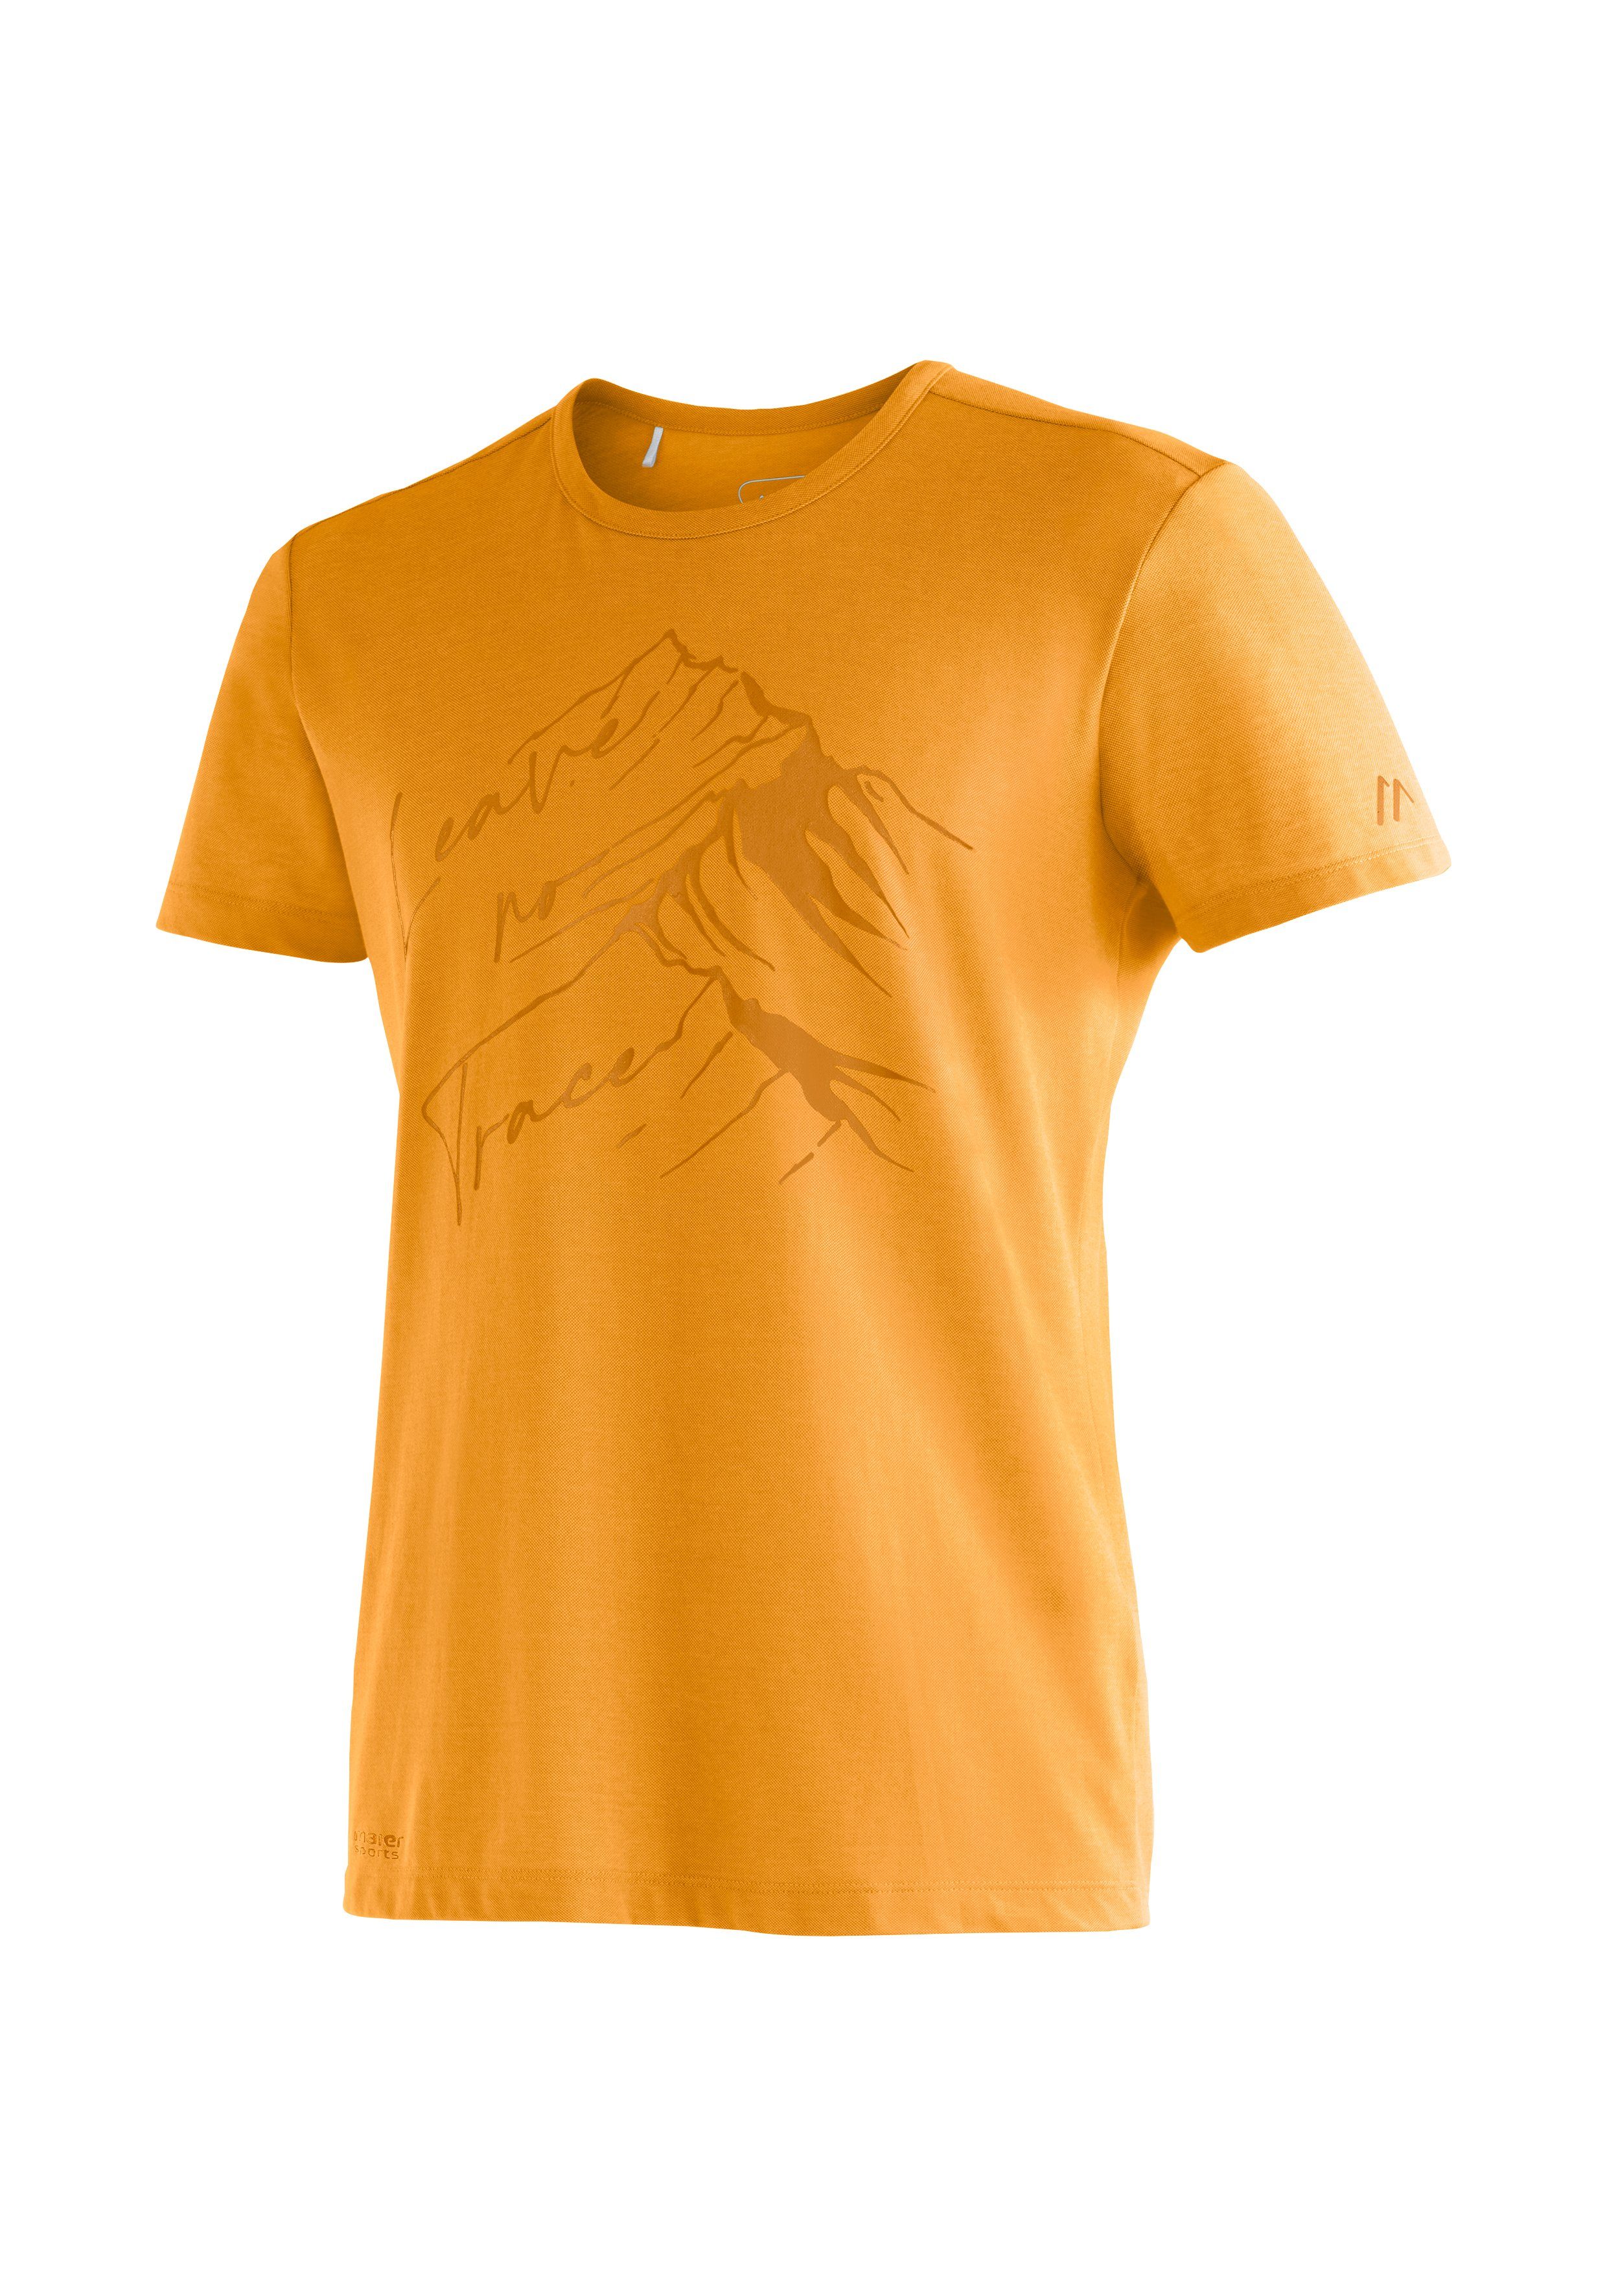 T-Shirt und Burgeis für Freizeit Sports Kurzarmshirt mit dunkelorange Maier Print Herren 17 M Wandern